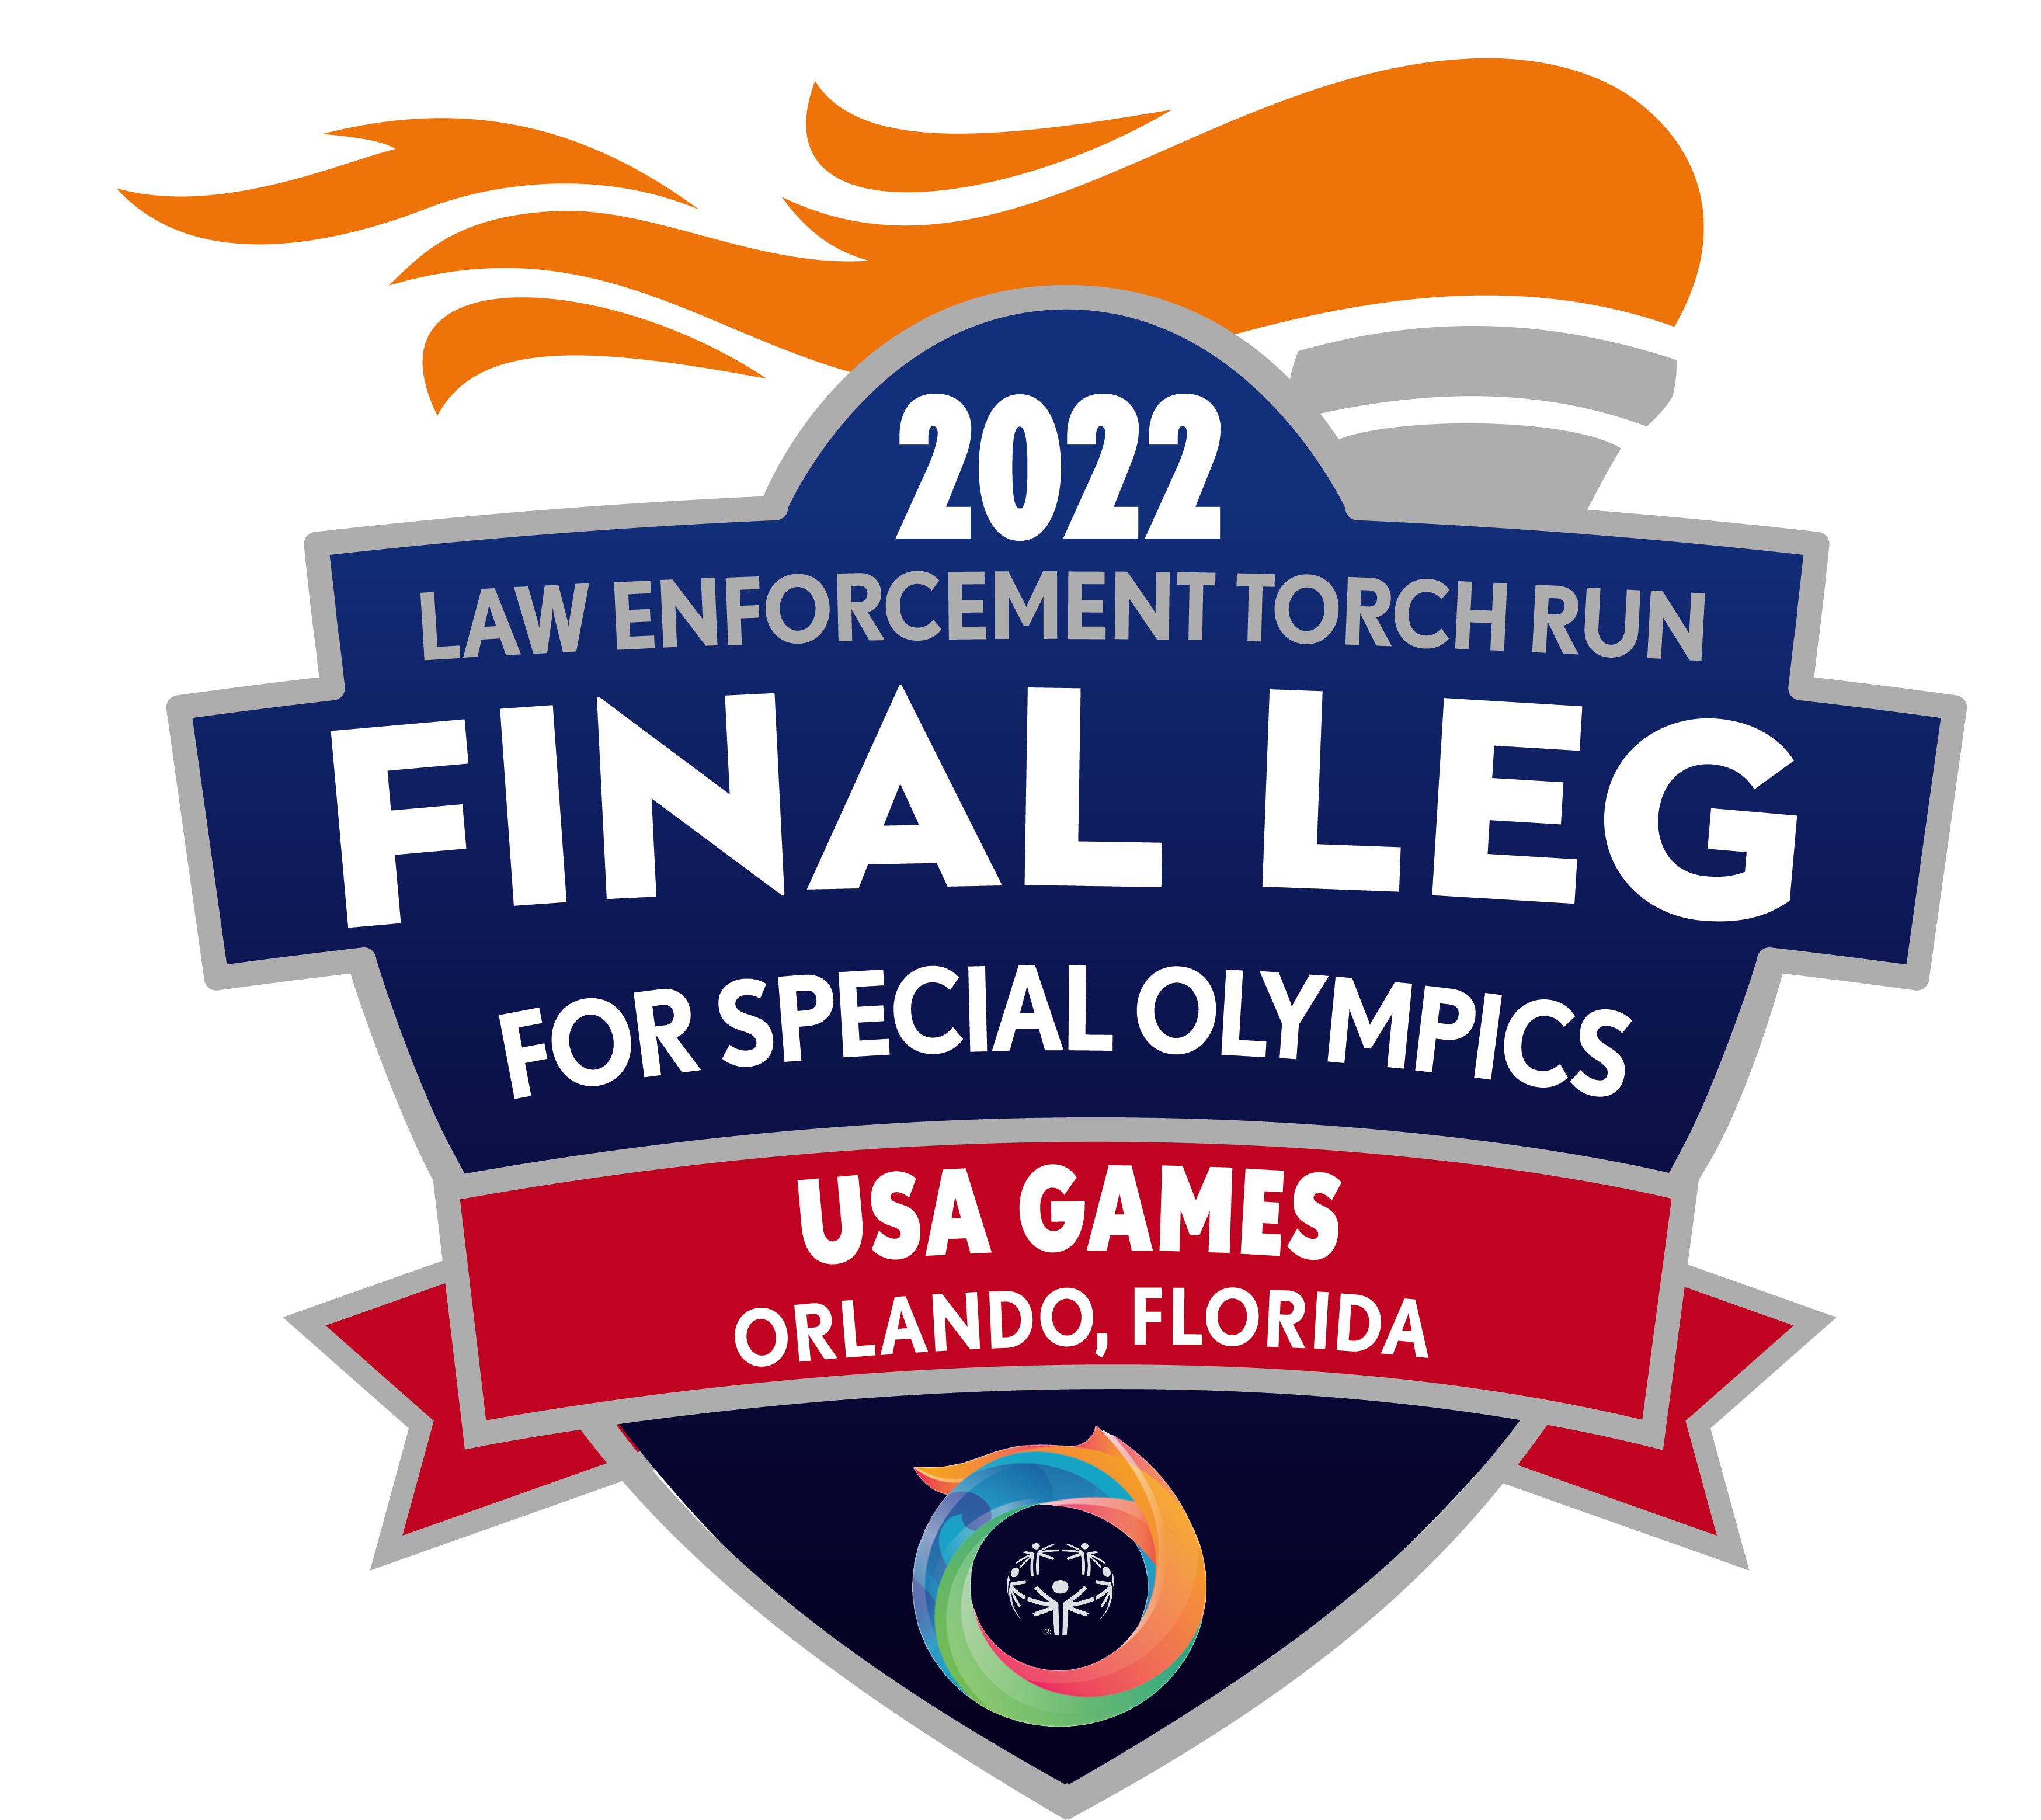 USA Final Leg logo